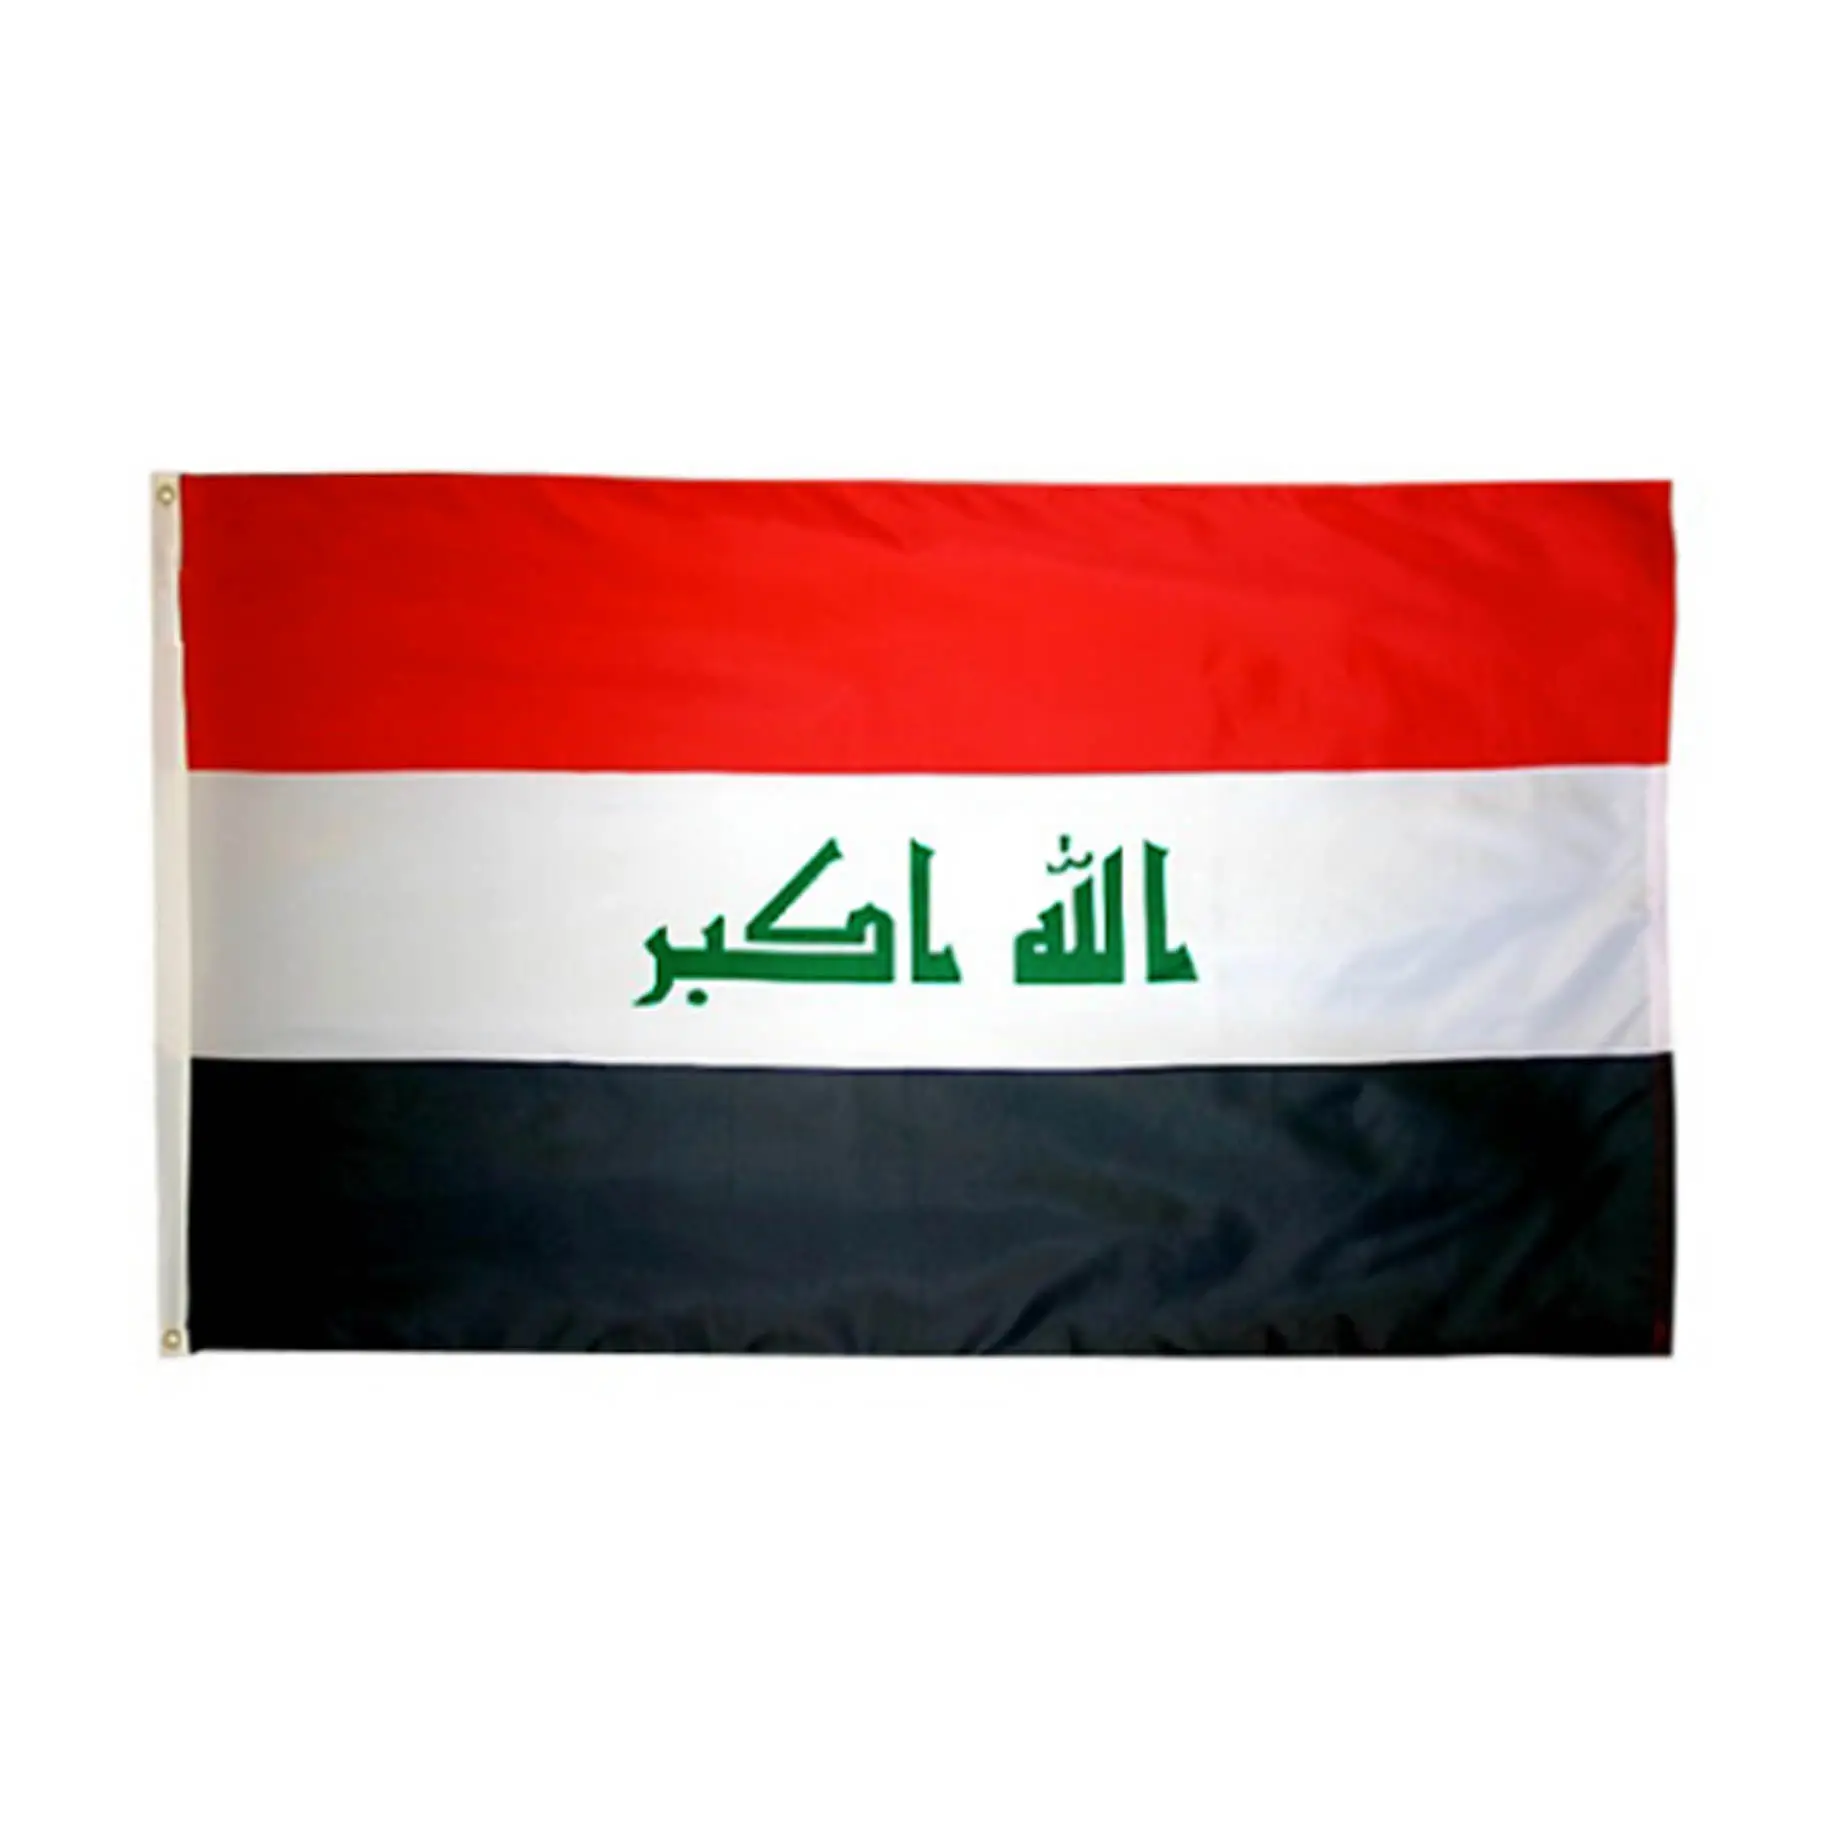 Digitaldruck Europa blau gelb rot Flagge, Werbe land Flaggen benutzer definierte, Irak Flagge national